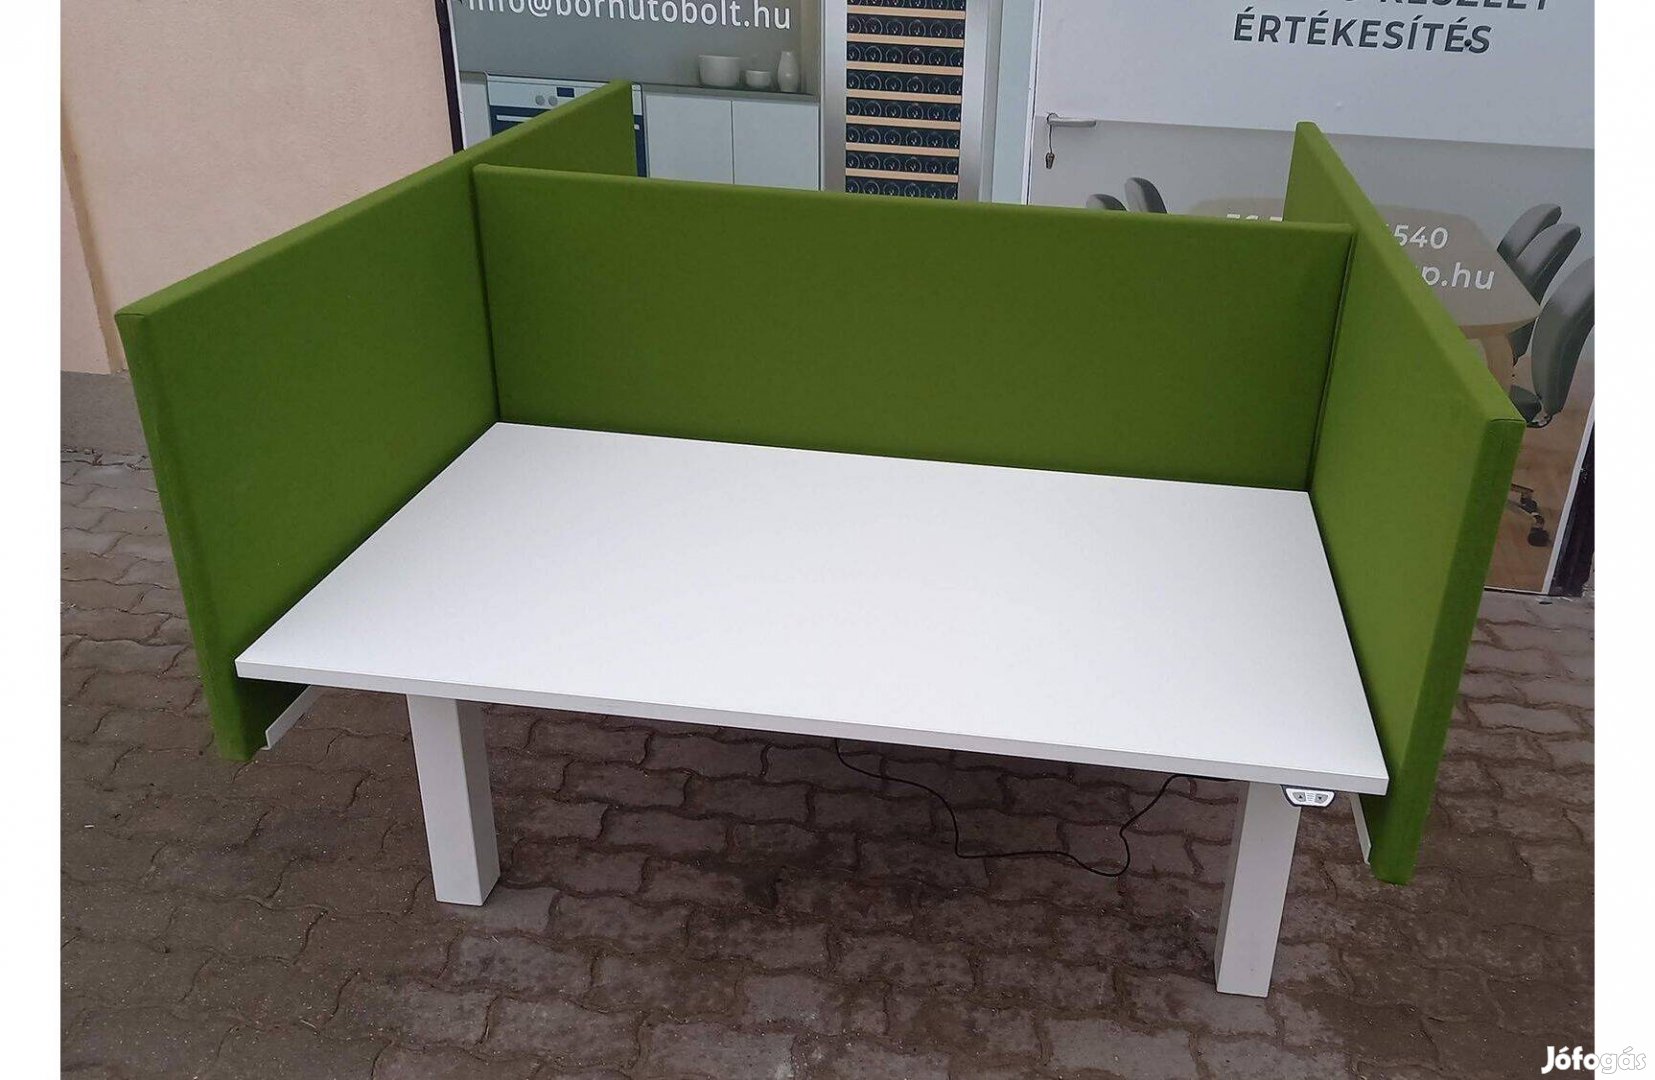 Asztali paraván, térelválasztó, zöld színű, oldalsó elem - használt